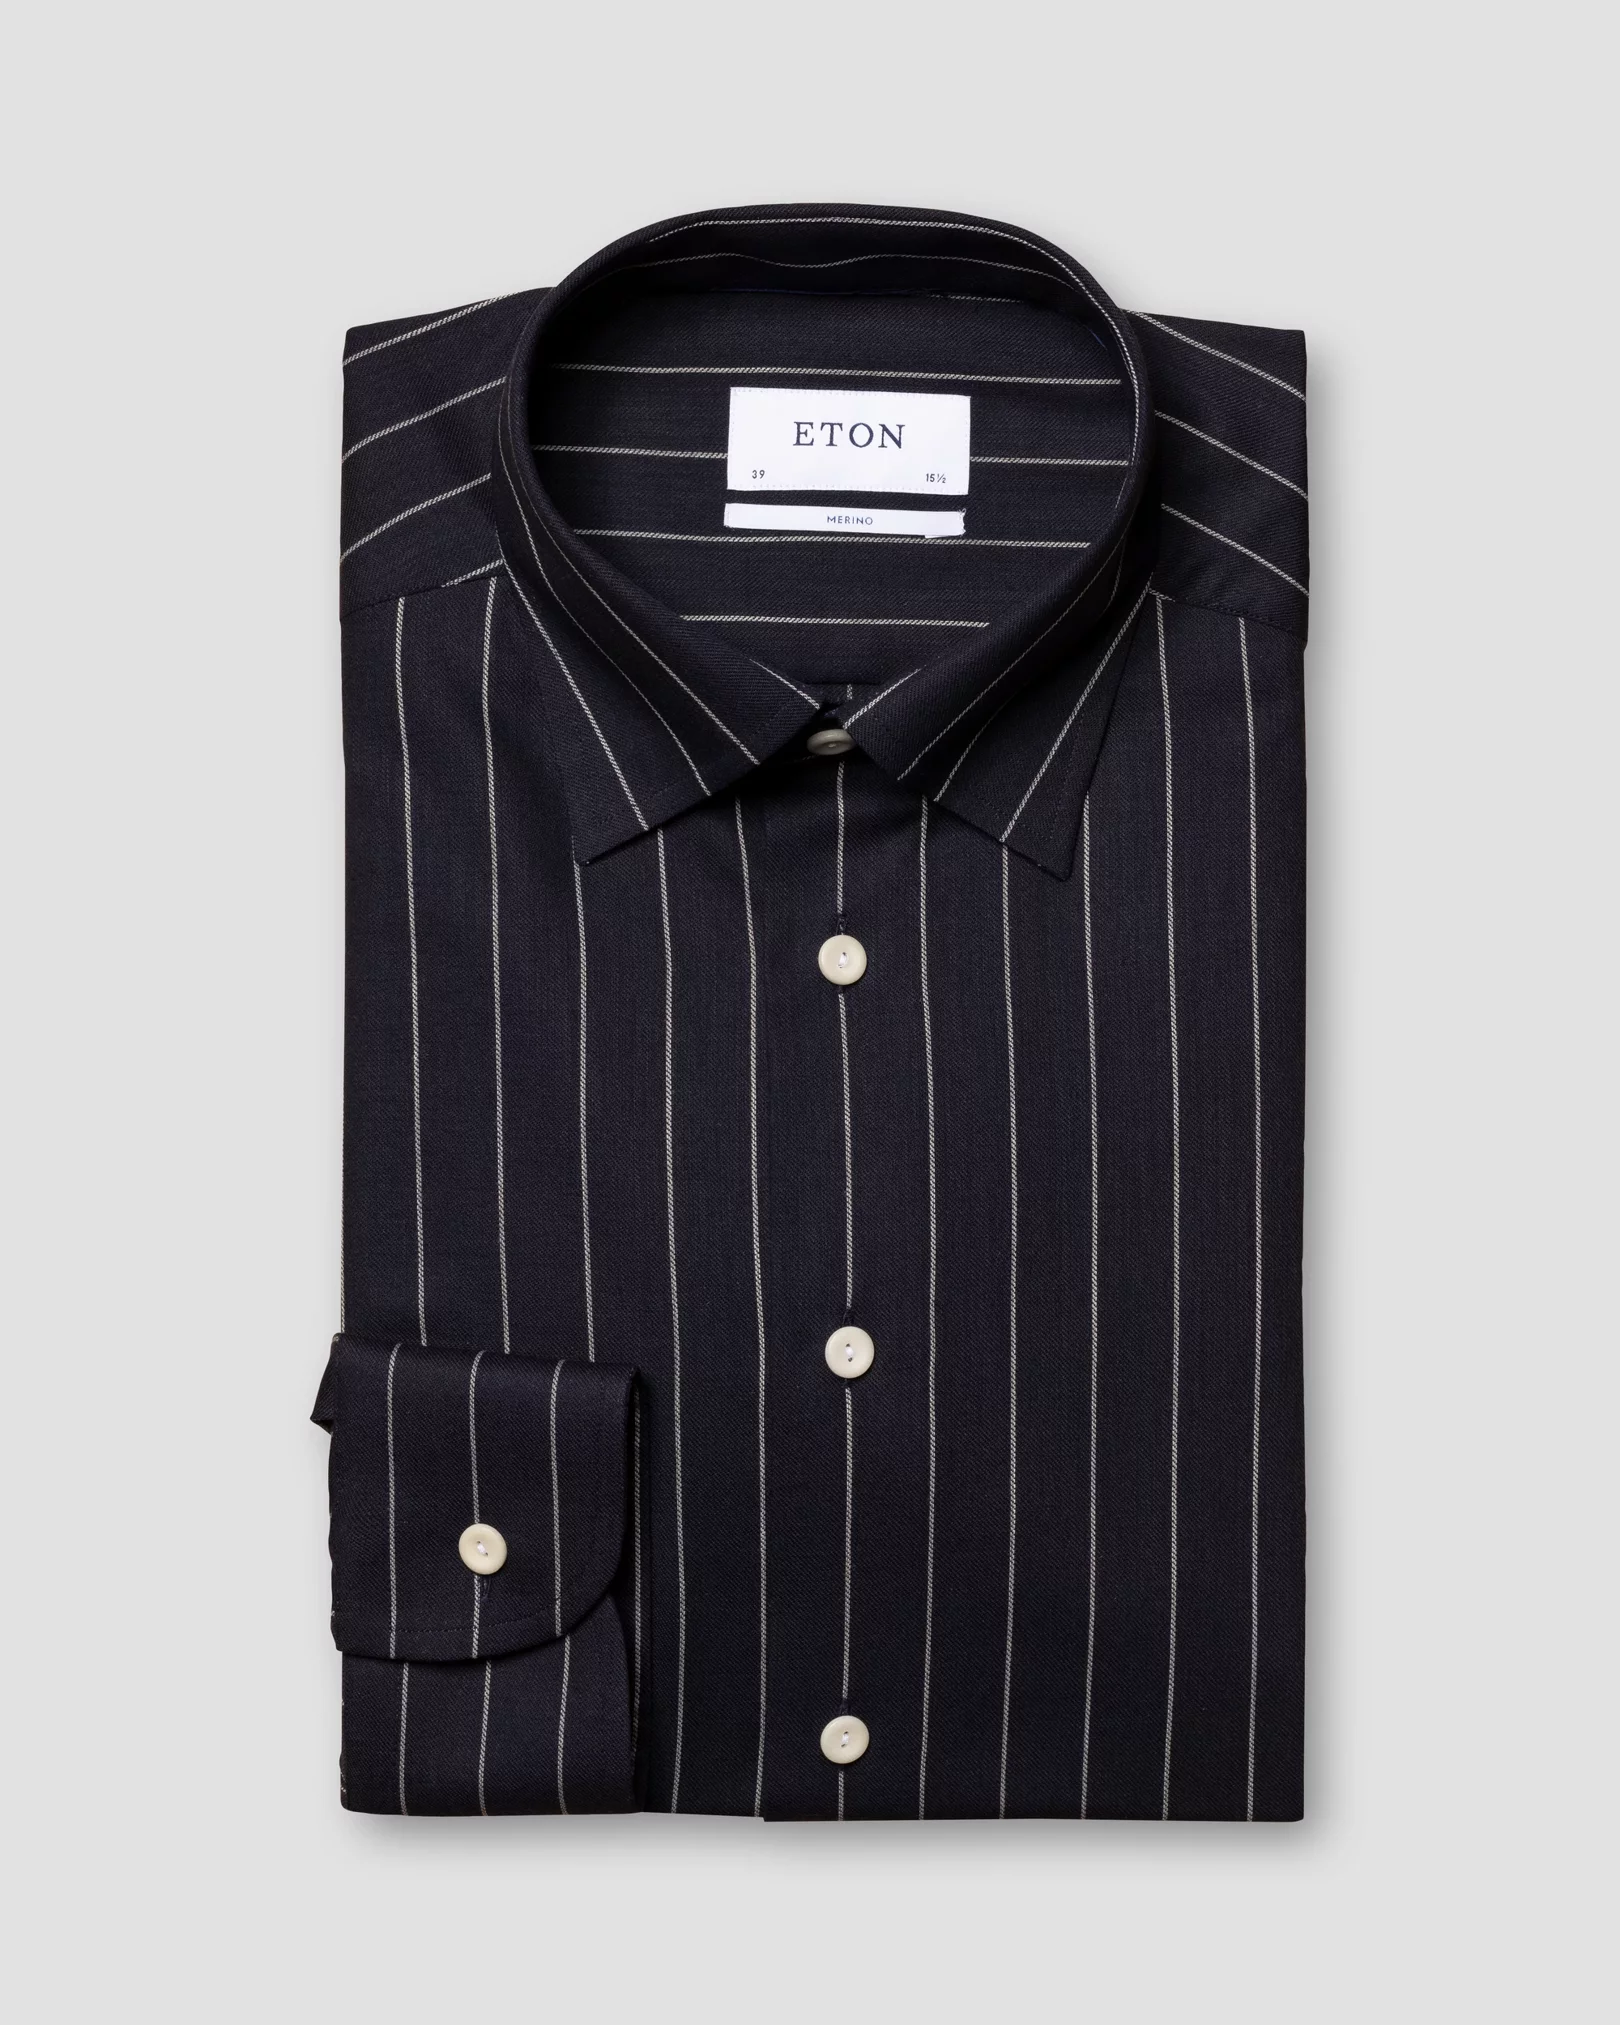 Eton - navy blue pin stripe merino wool shirt